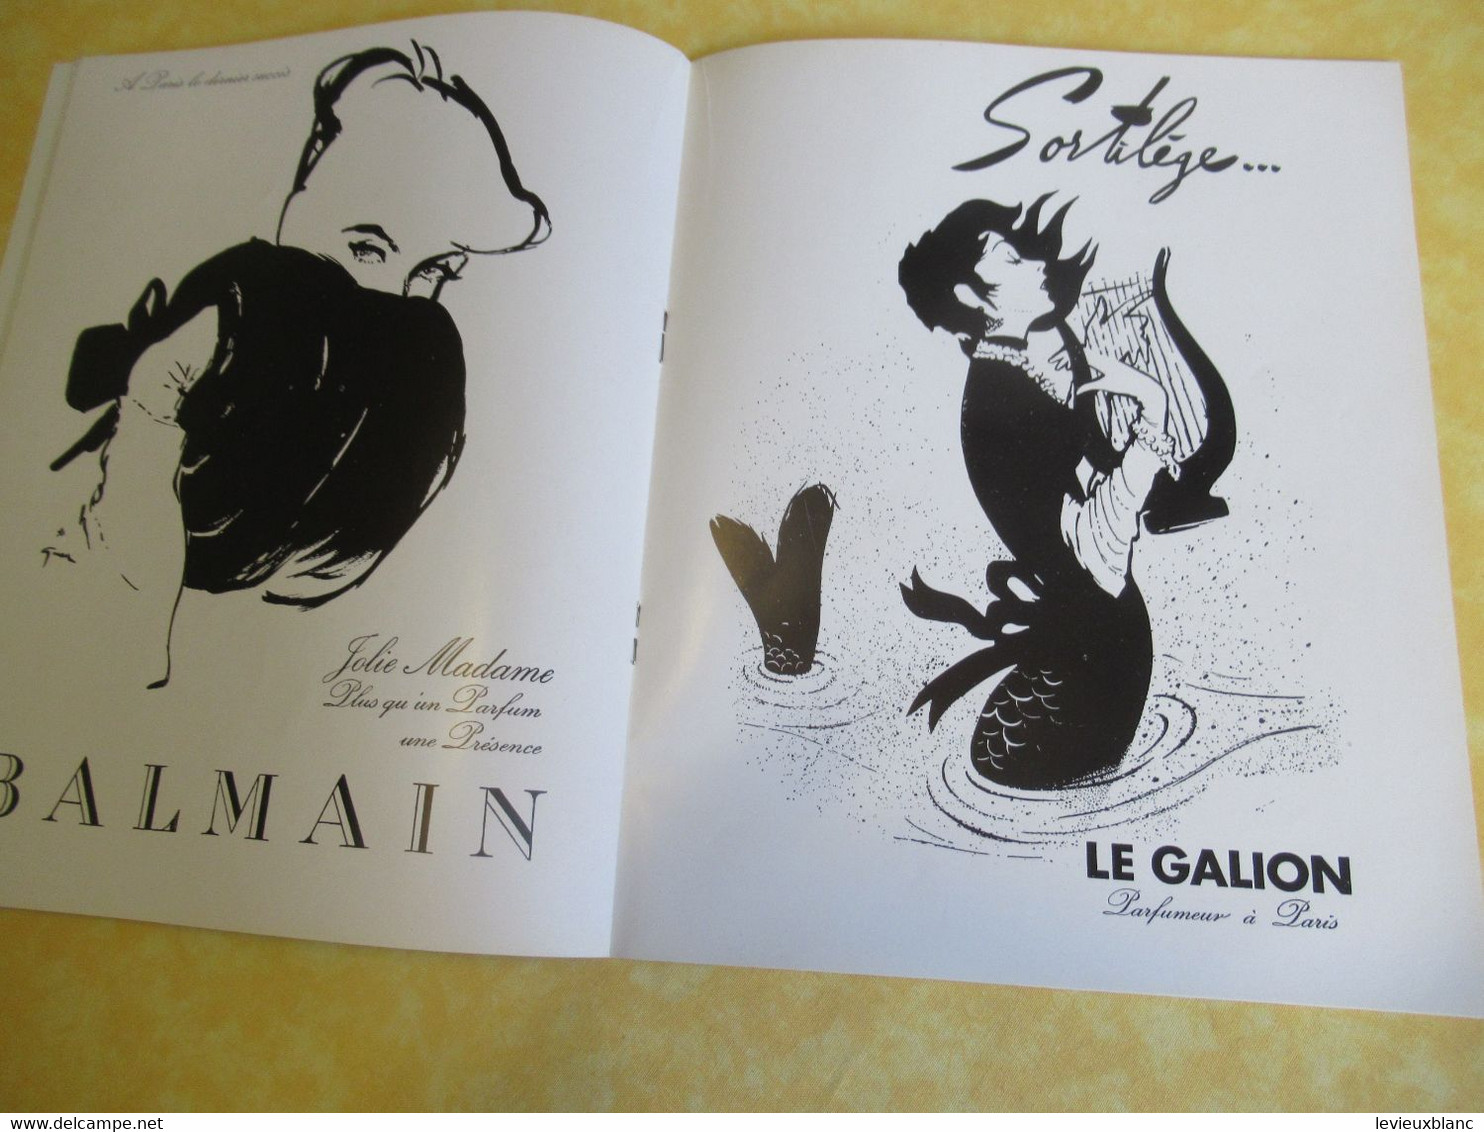 Plaquette ancienne/Théâtre des CHAMPS ELYSEES/Grand Ballet du Marquis de Cuevas/Tallchieff/Skibine/Golovine/1954 PROG341